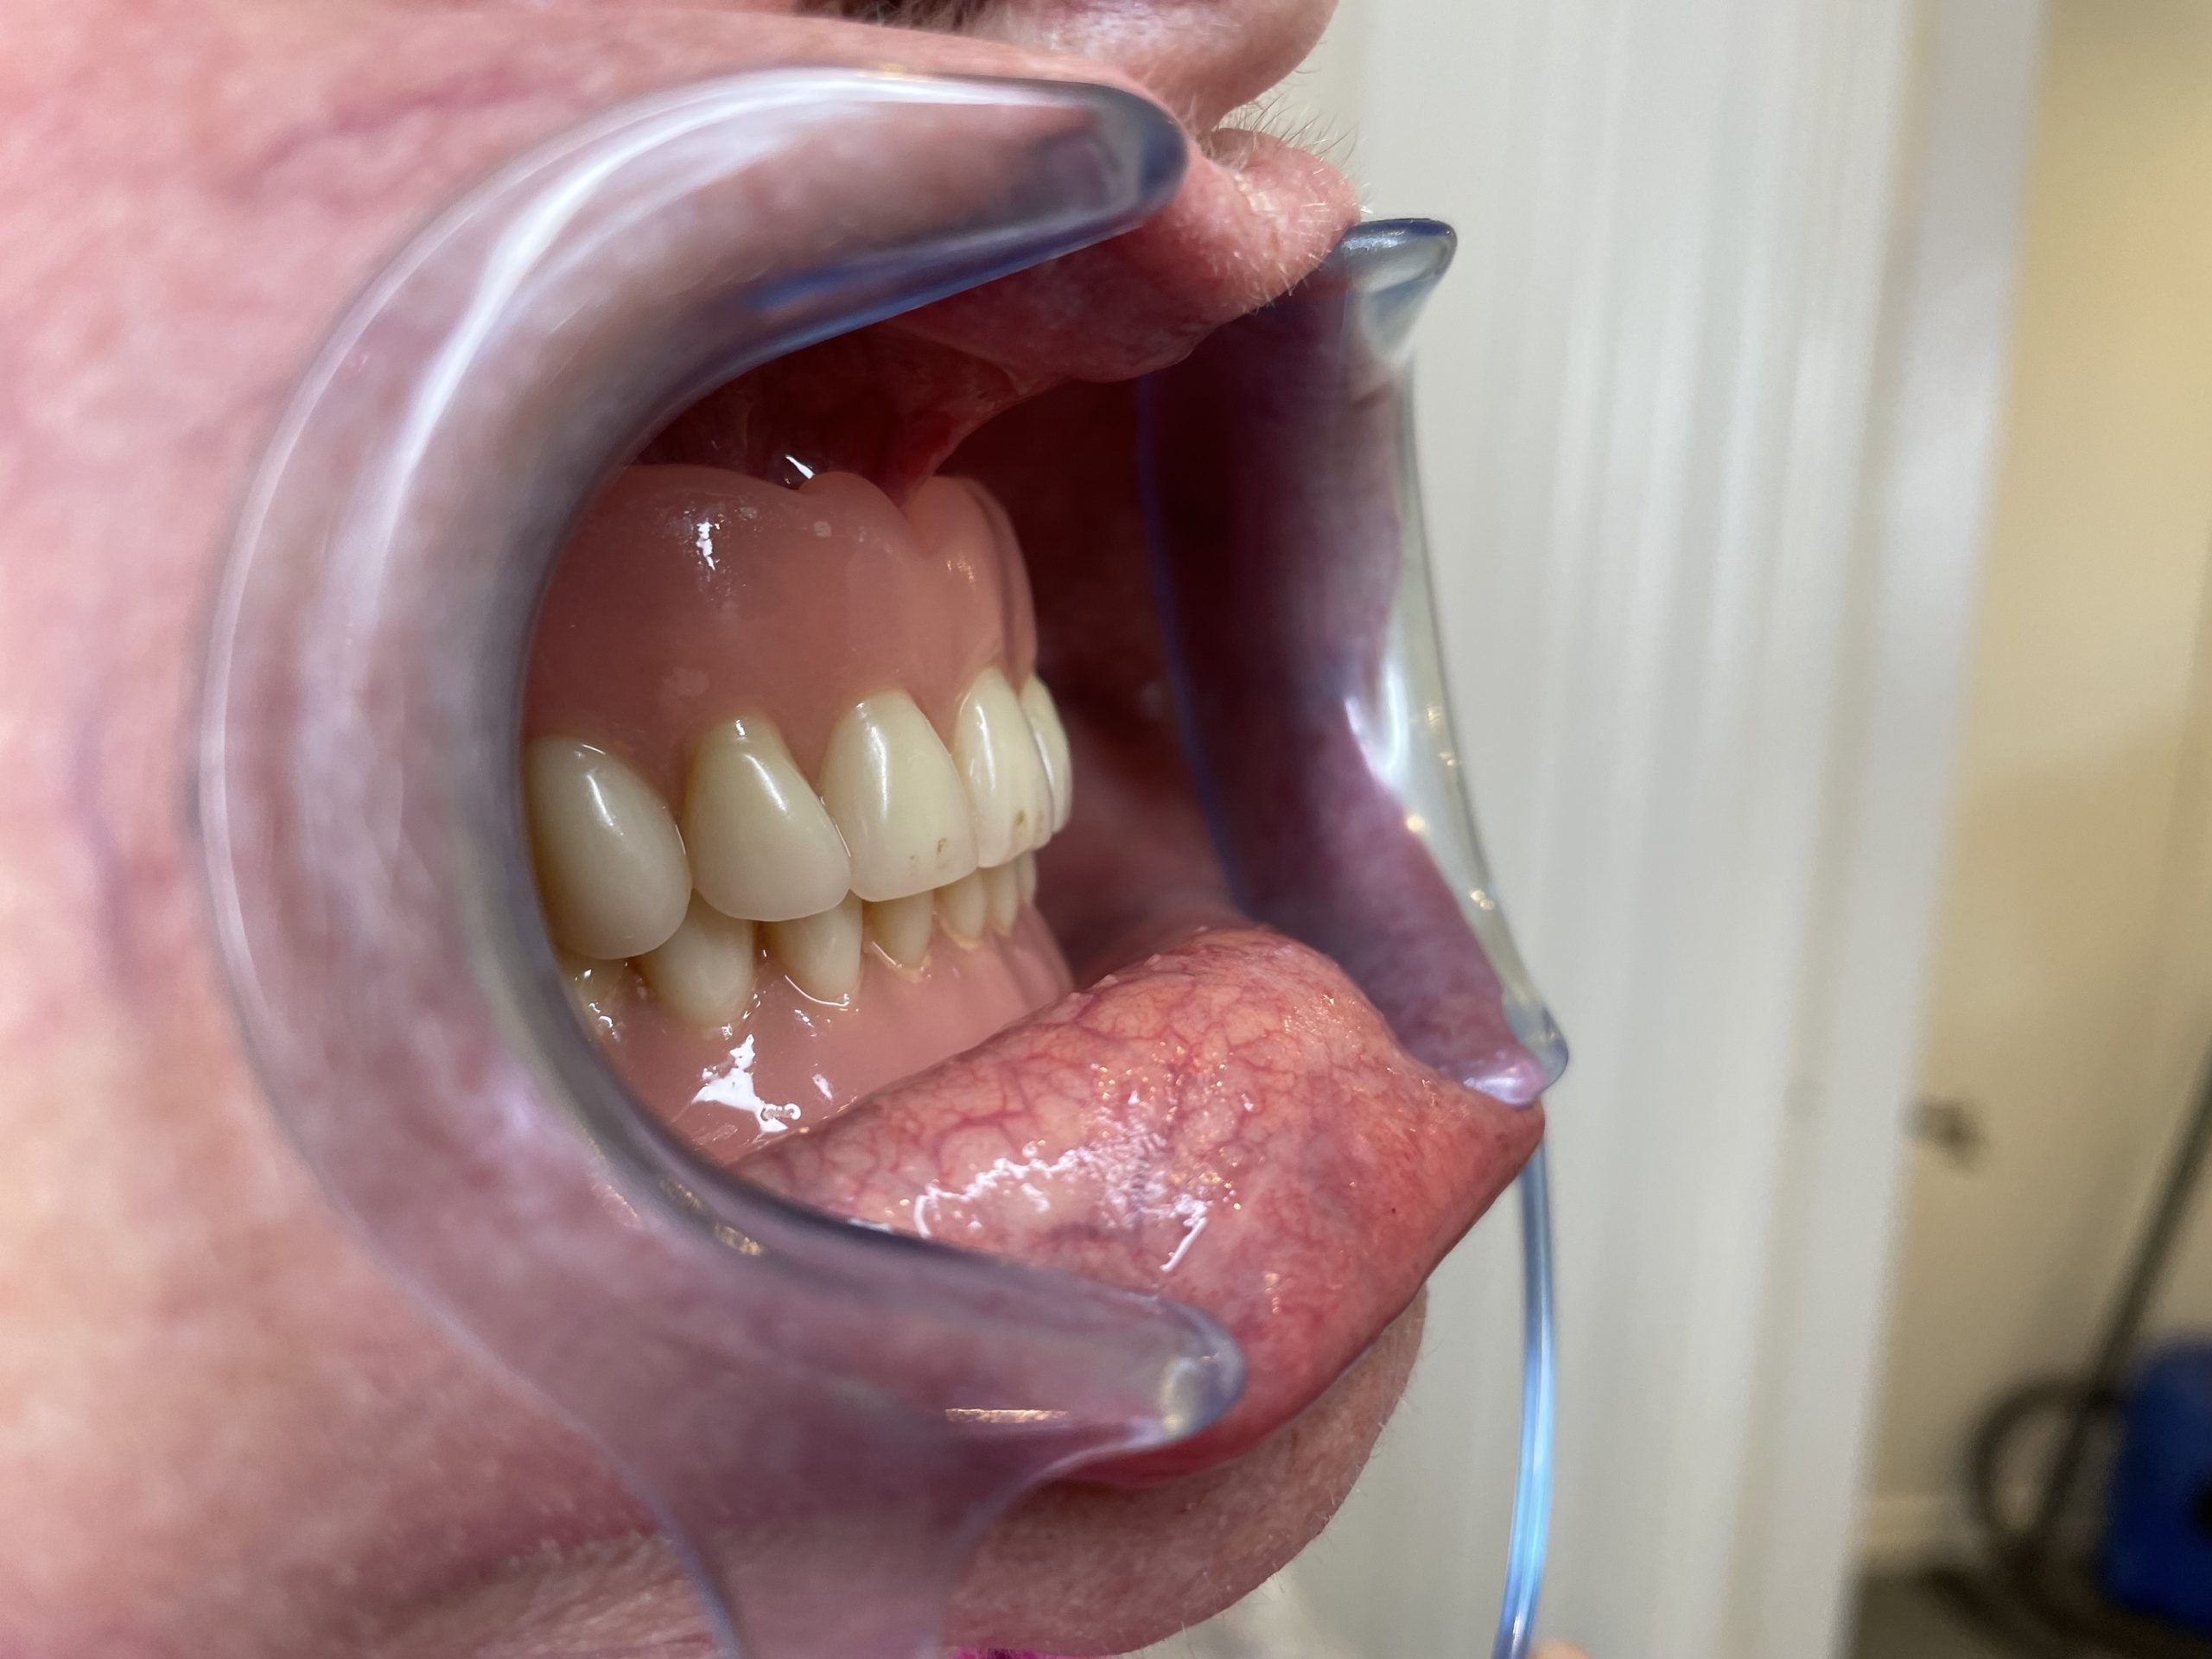 gammel tandprotese højre side åben mund Resultater af færdigeproduceret tandproteser